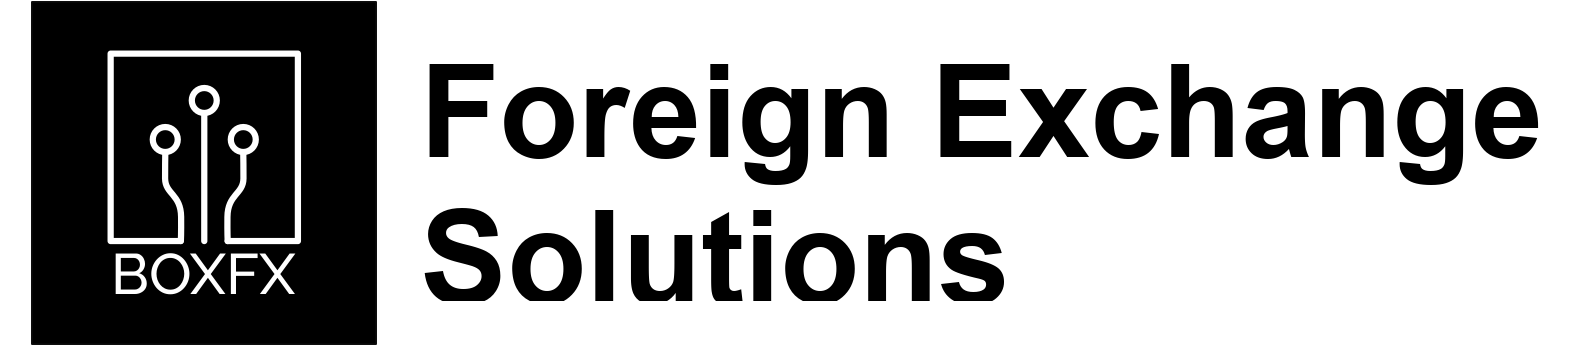 Boxfx logo